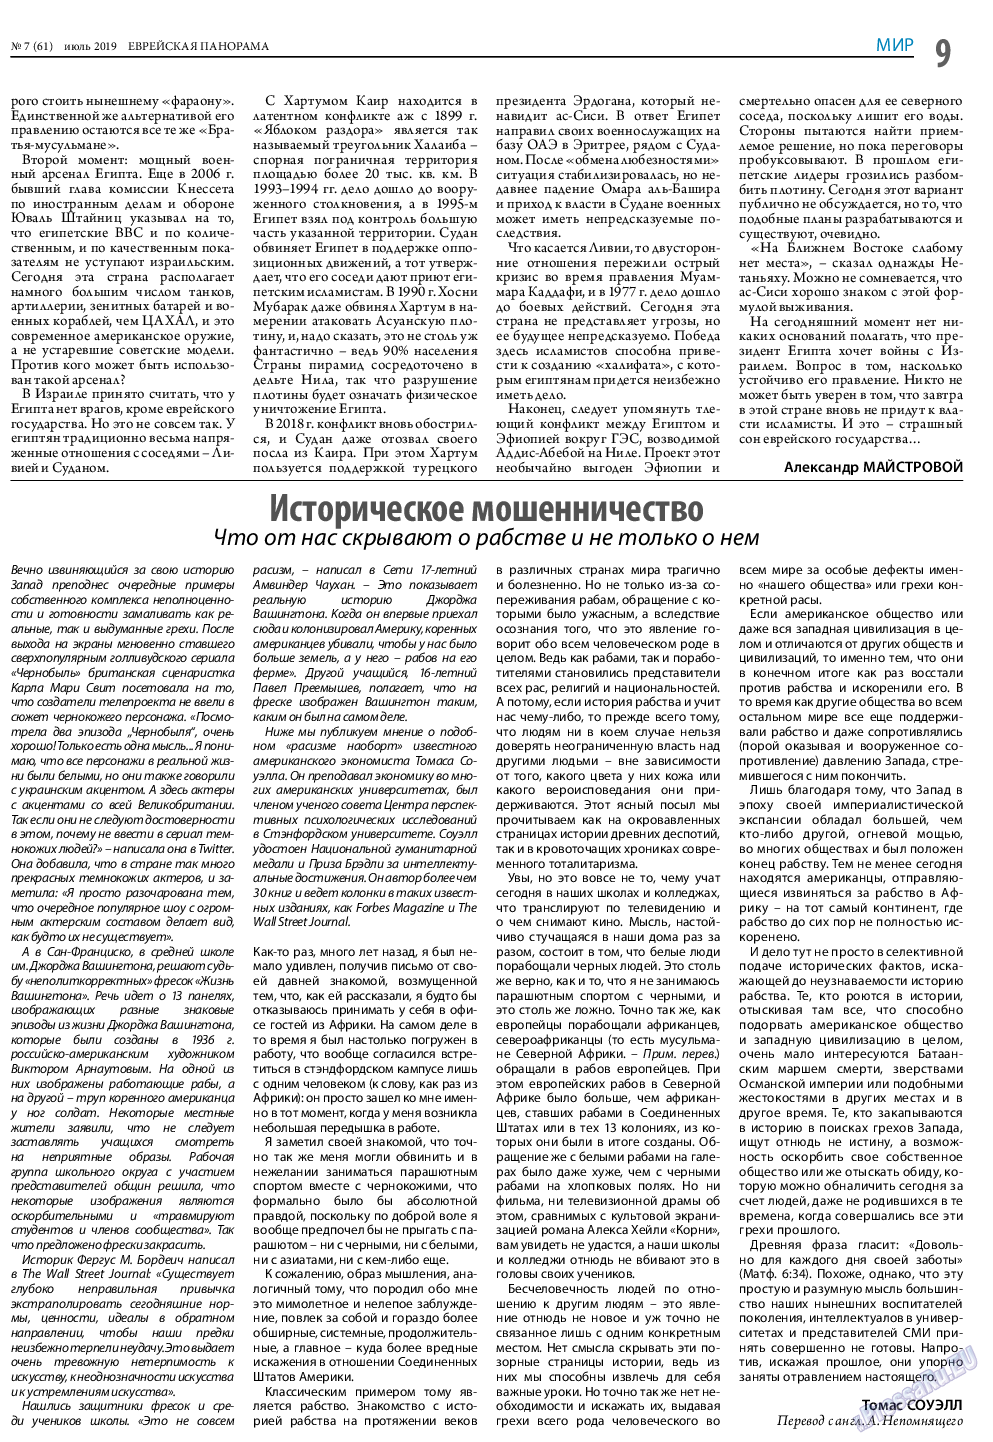 Еврейская панорама (газета). 2019 год, номер 7, стр. 9